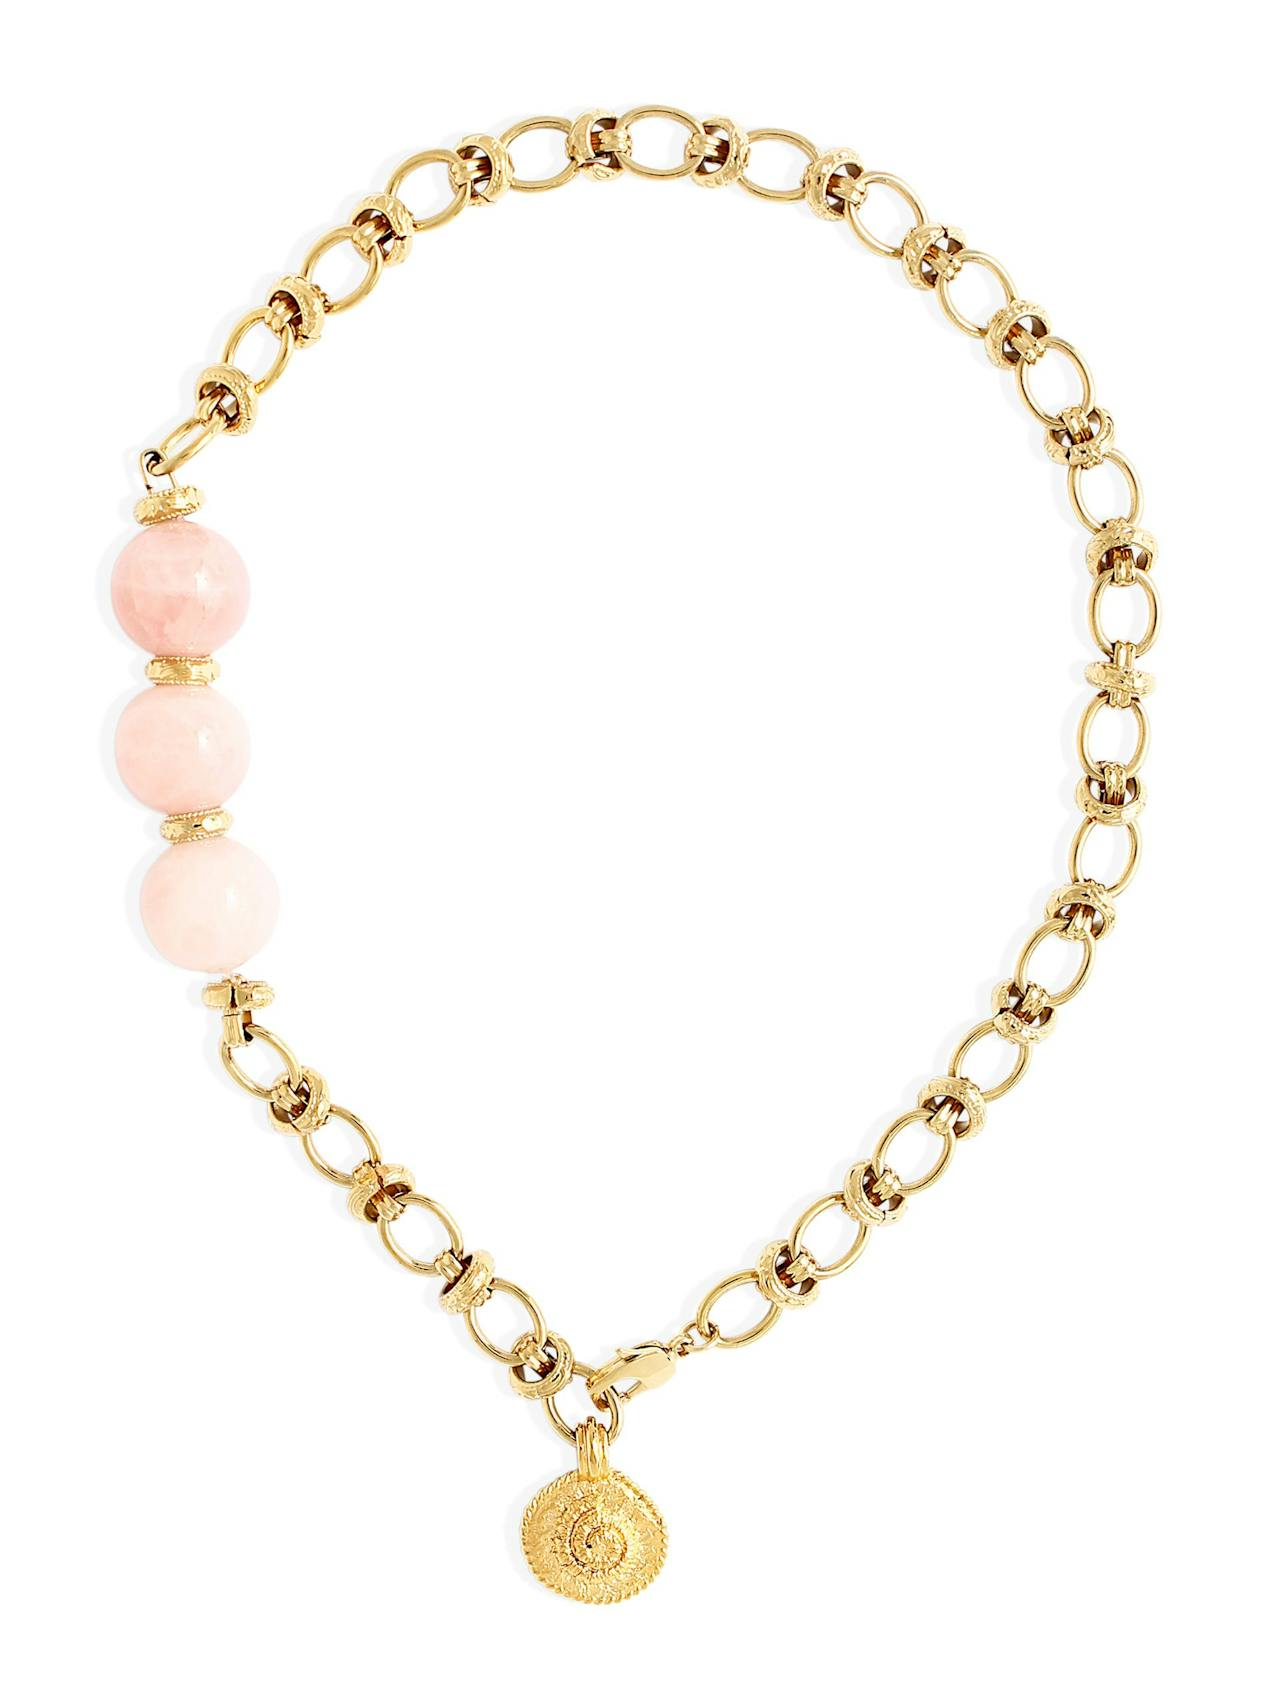 Gold with rose quartz Octavia necklace